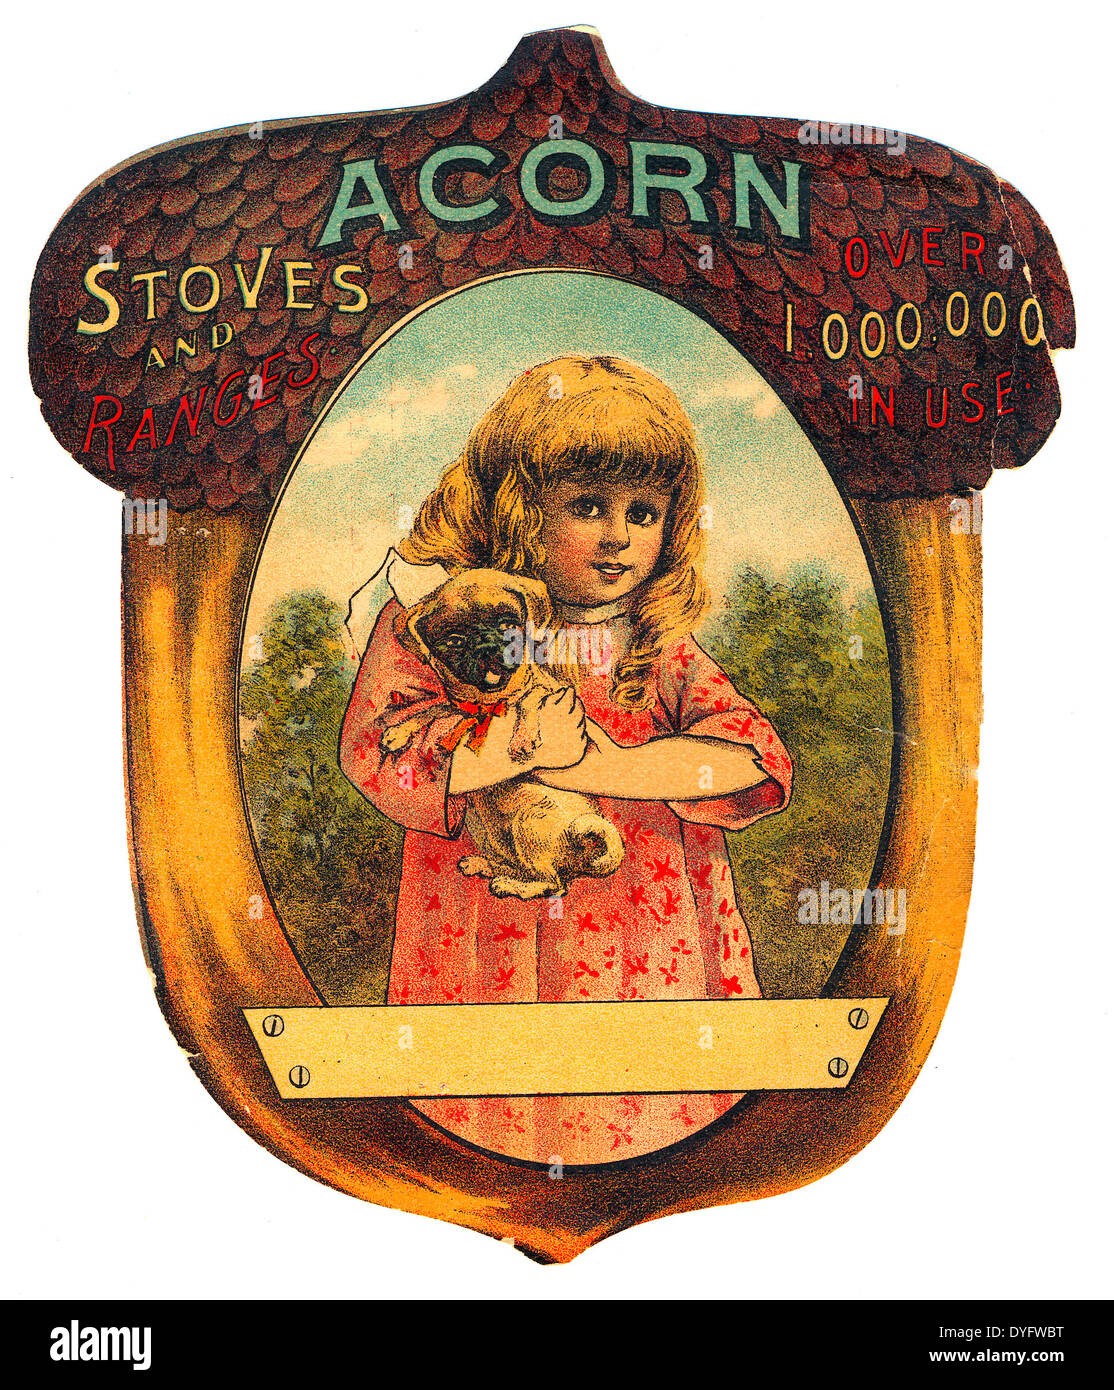 Pubblicità per Acorn stufe e gamme - oltre 1.000.000 in uso, circa 1886 Foto Stock